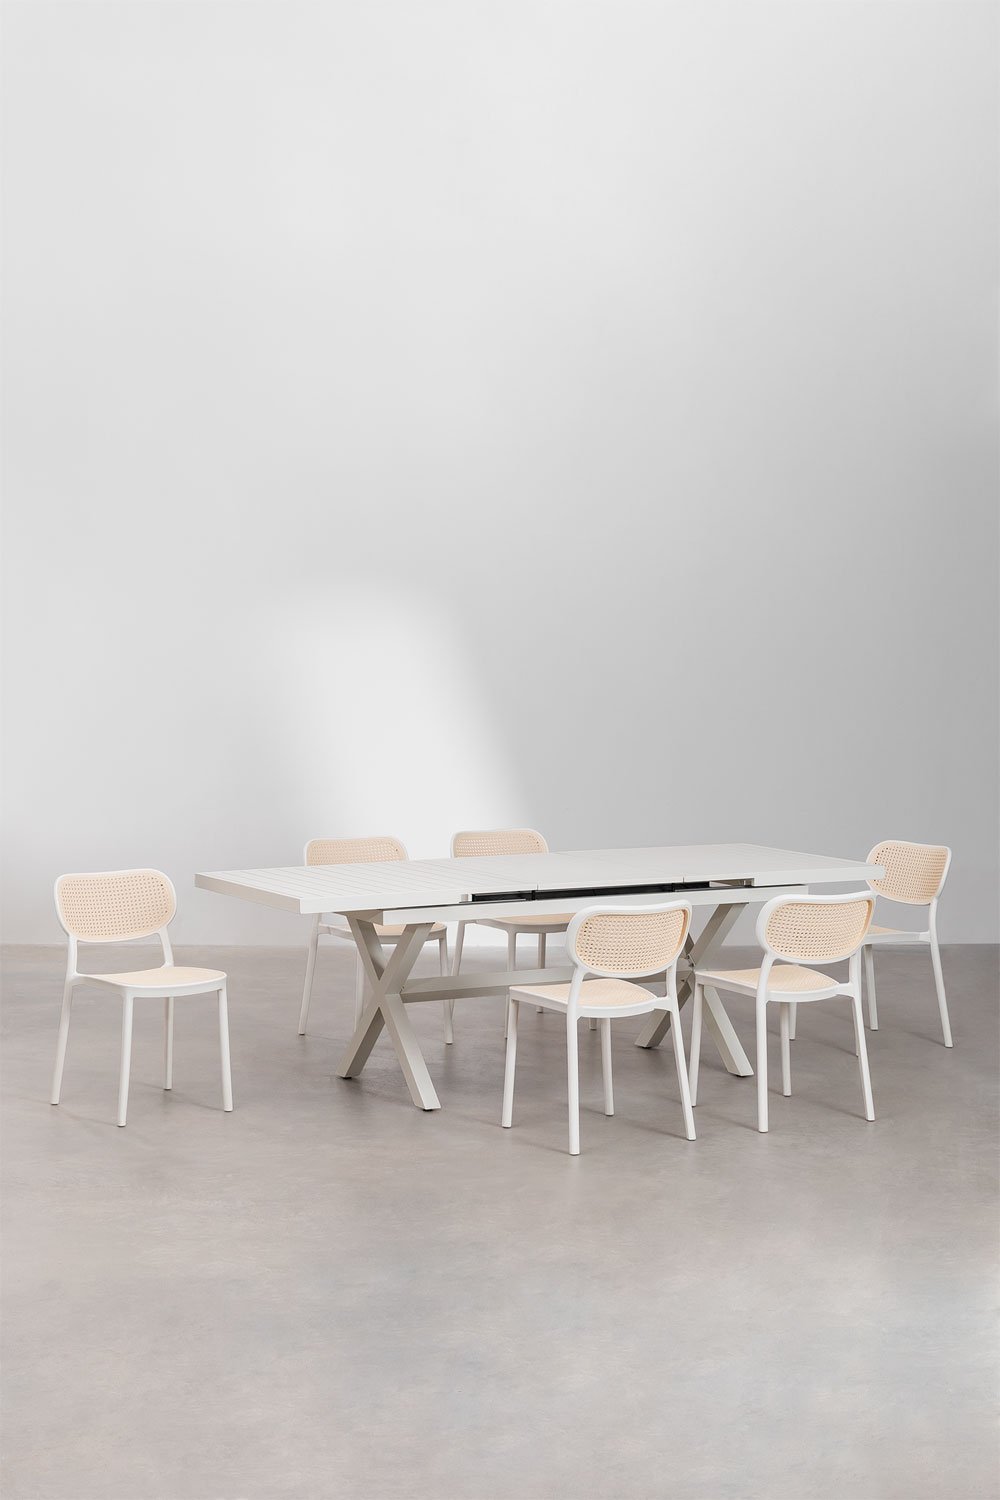 Ensemble table de jardin rectangulaire extensible en aluminium (180-240x90 cm) Karena et 6 chaises de jardin Omara, image de la galerie 1